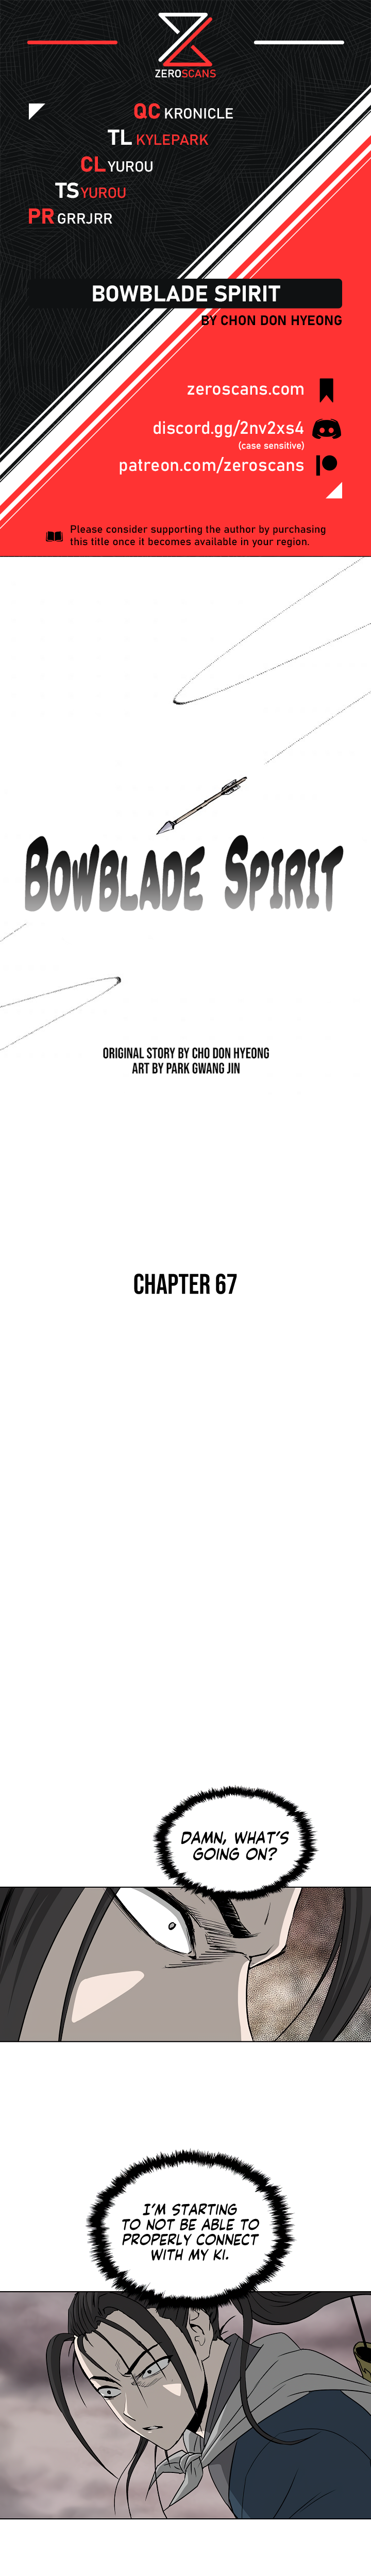 Bowblade Spirit - Chapter 6158 - Image 1